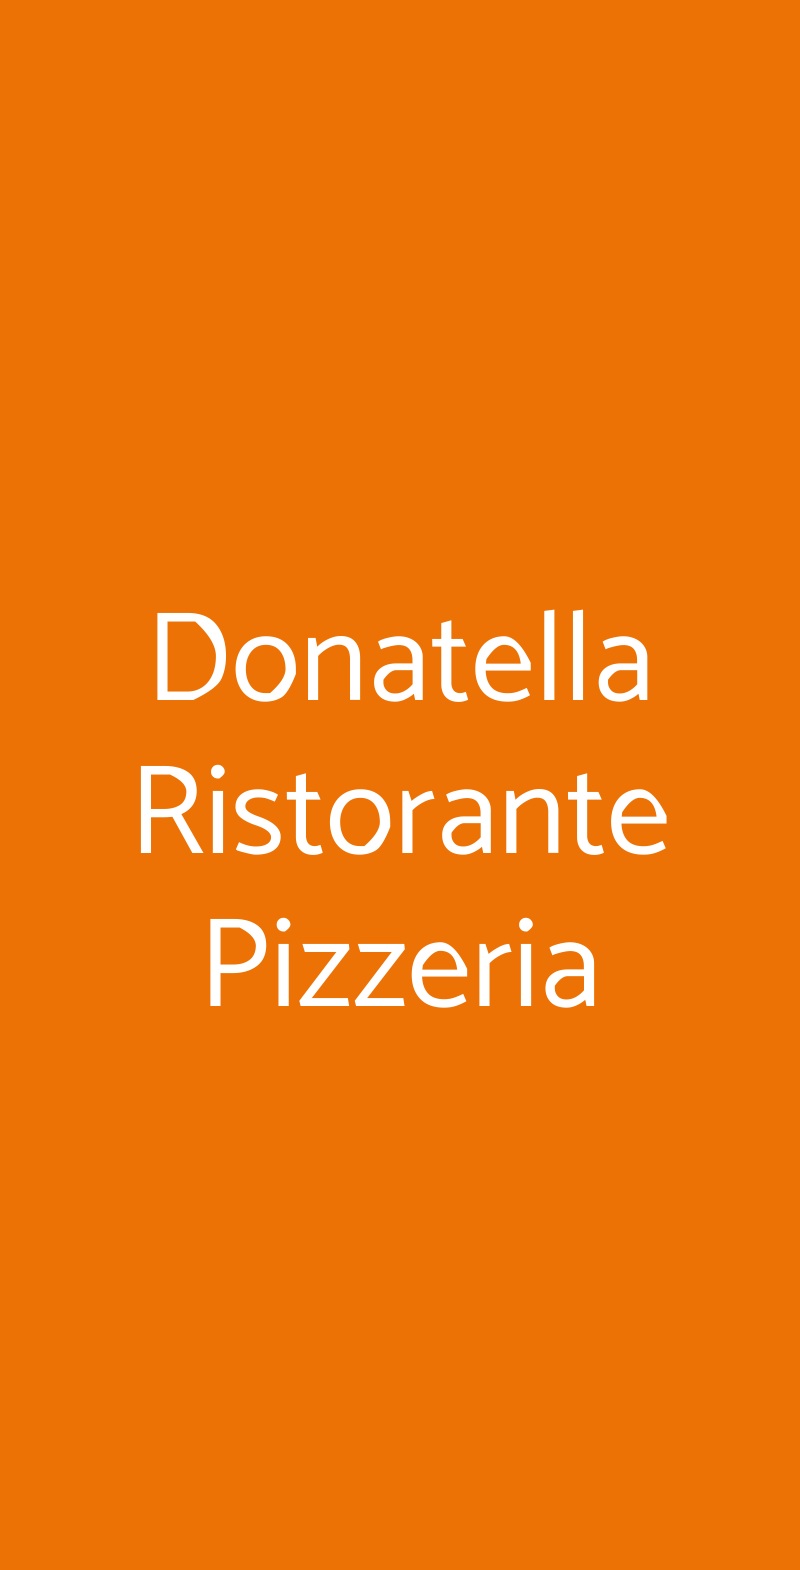 Donatella Ristorante Pizzeria Posada menù 1 pagina